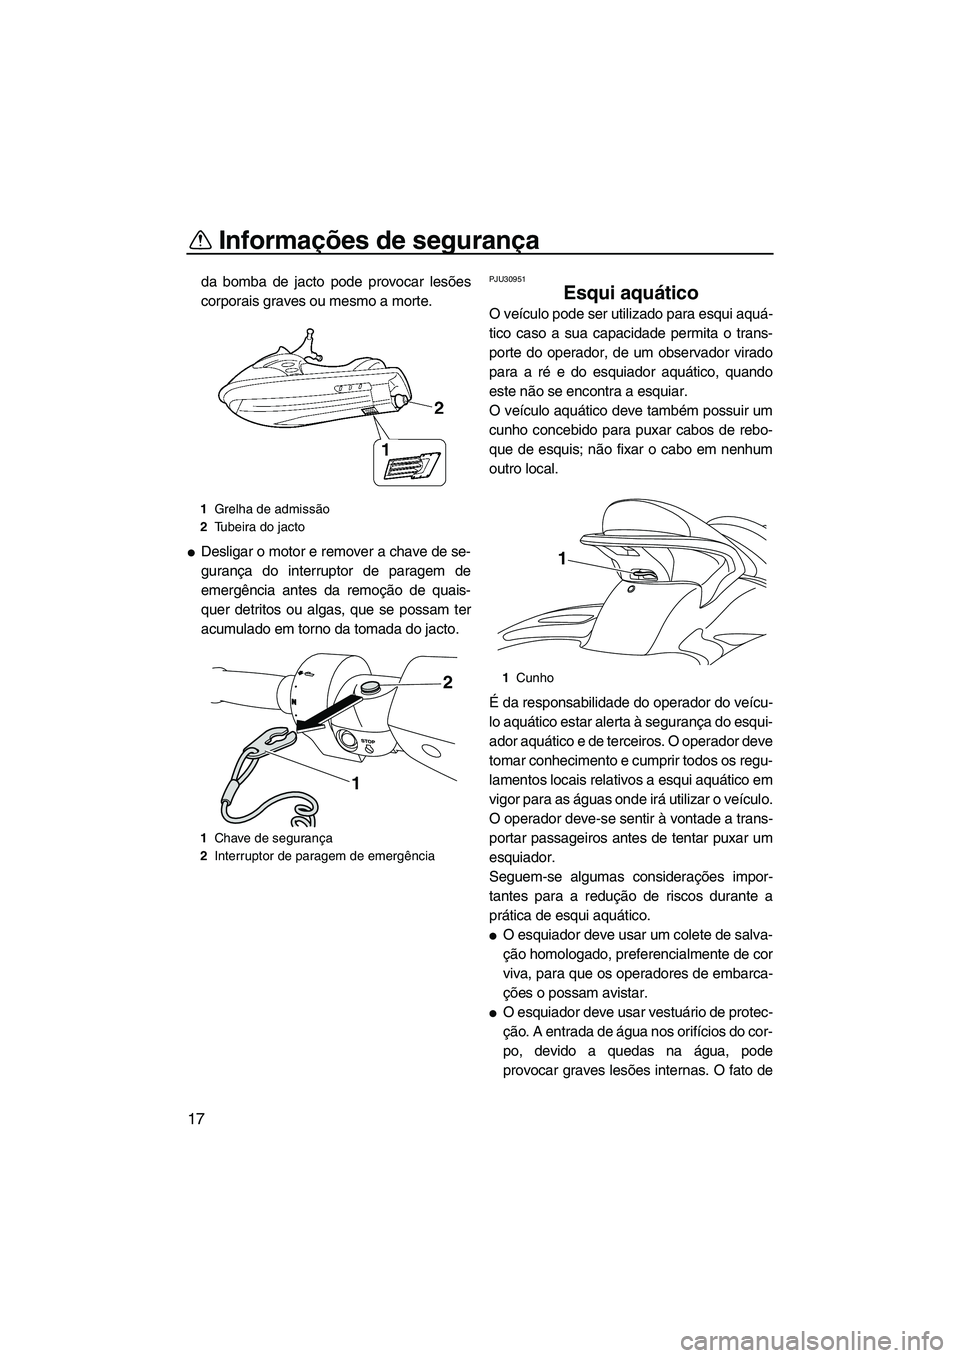 YAMAHA SVHO 2009  Manual de utilização (in Portuguese) Informações de segurança
17
da bomba de jacto pode provocar lesões
corporais graves ou mesmo a morte.
Desligar o motor e remover a chave de se-
gurança do interruptor de paragem de
emergência a